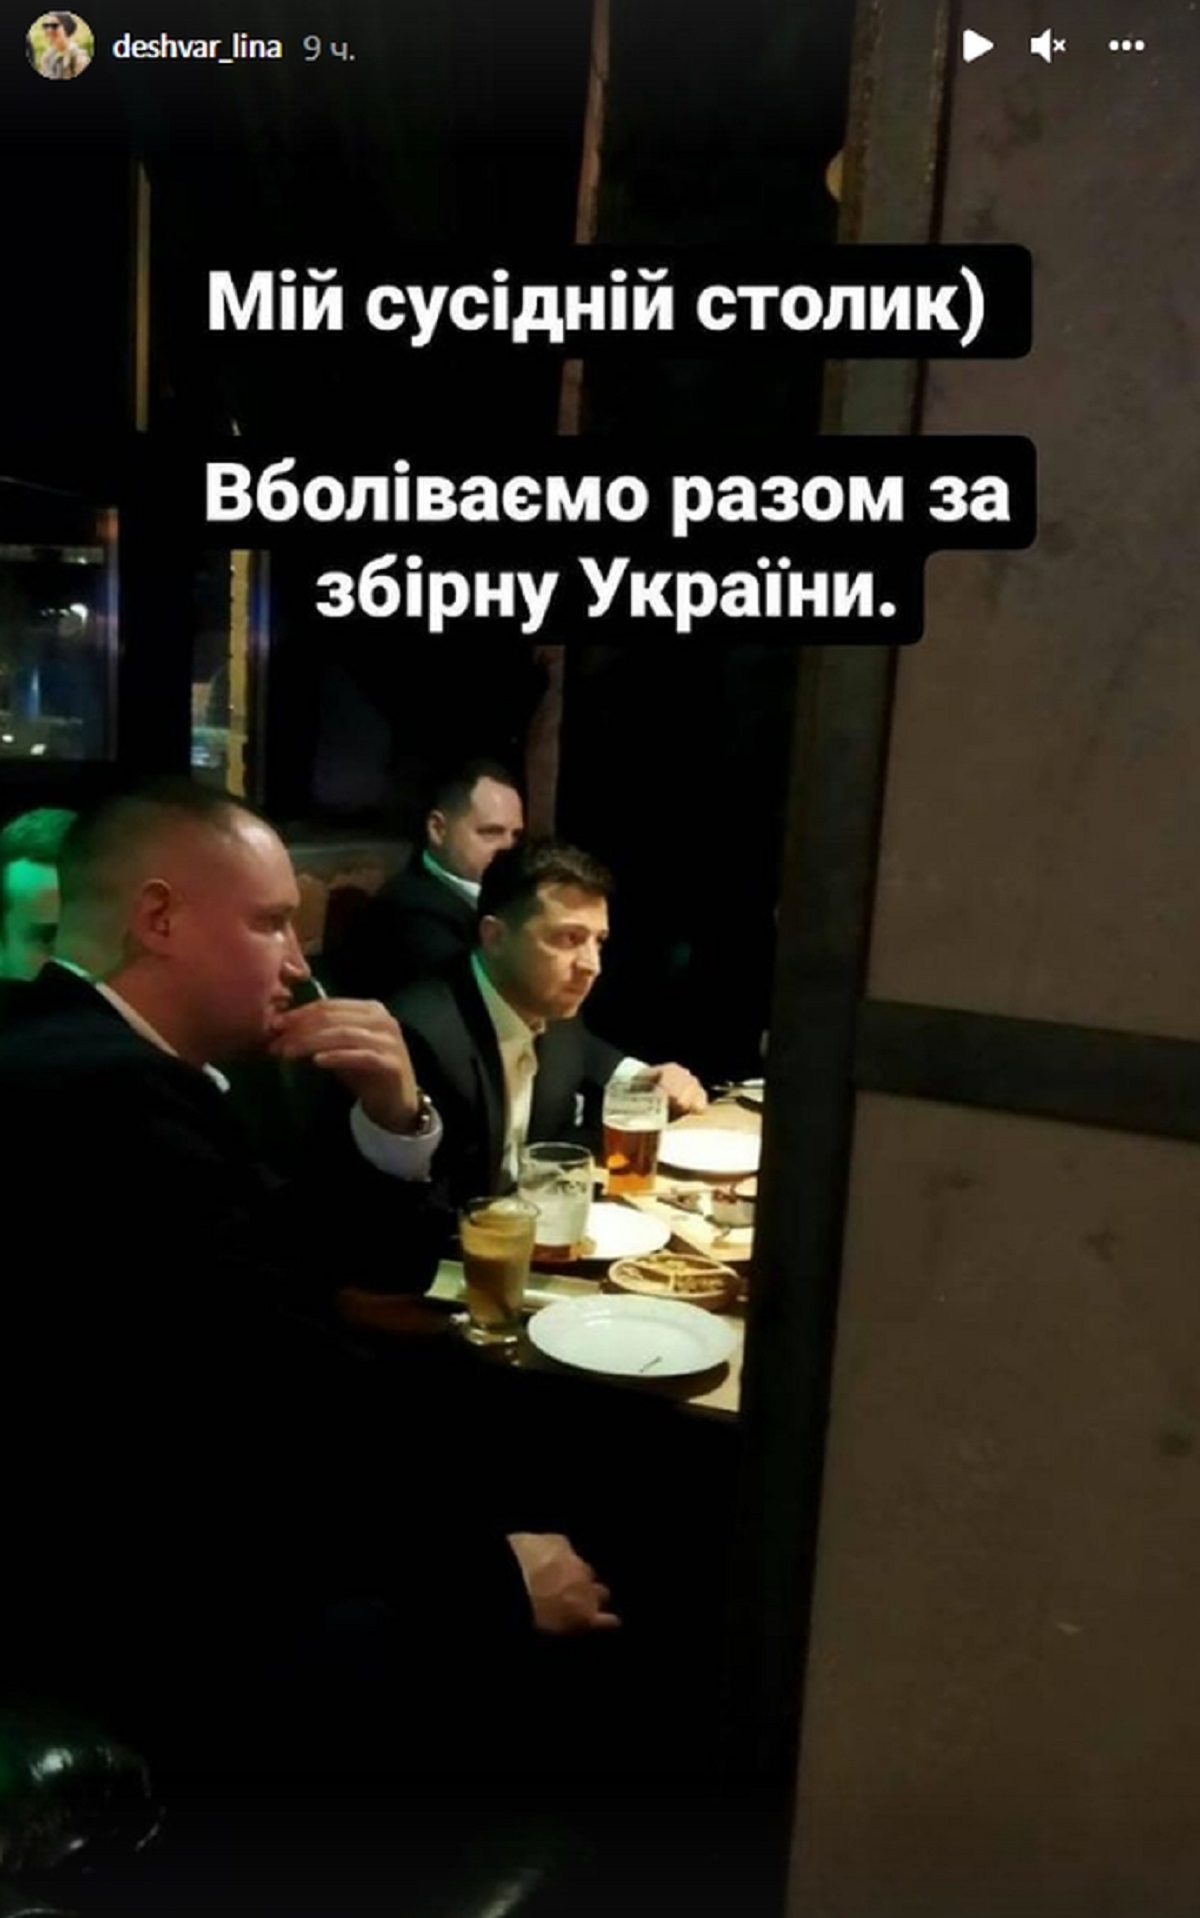 Президент Украины Владимир Зеленский и и глава Офиса президента Андрей Ермак накануне болели за украинскую сборную в киевском баре